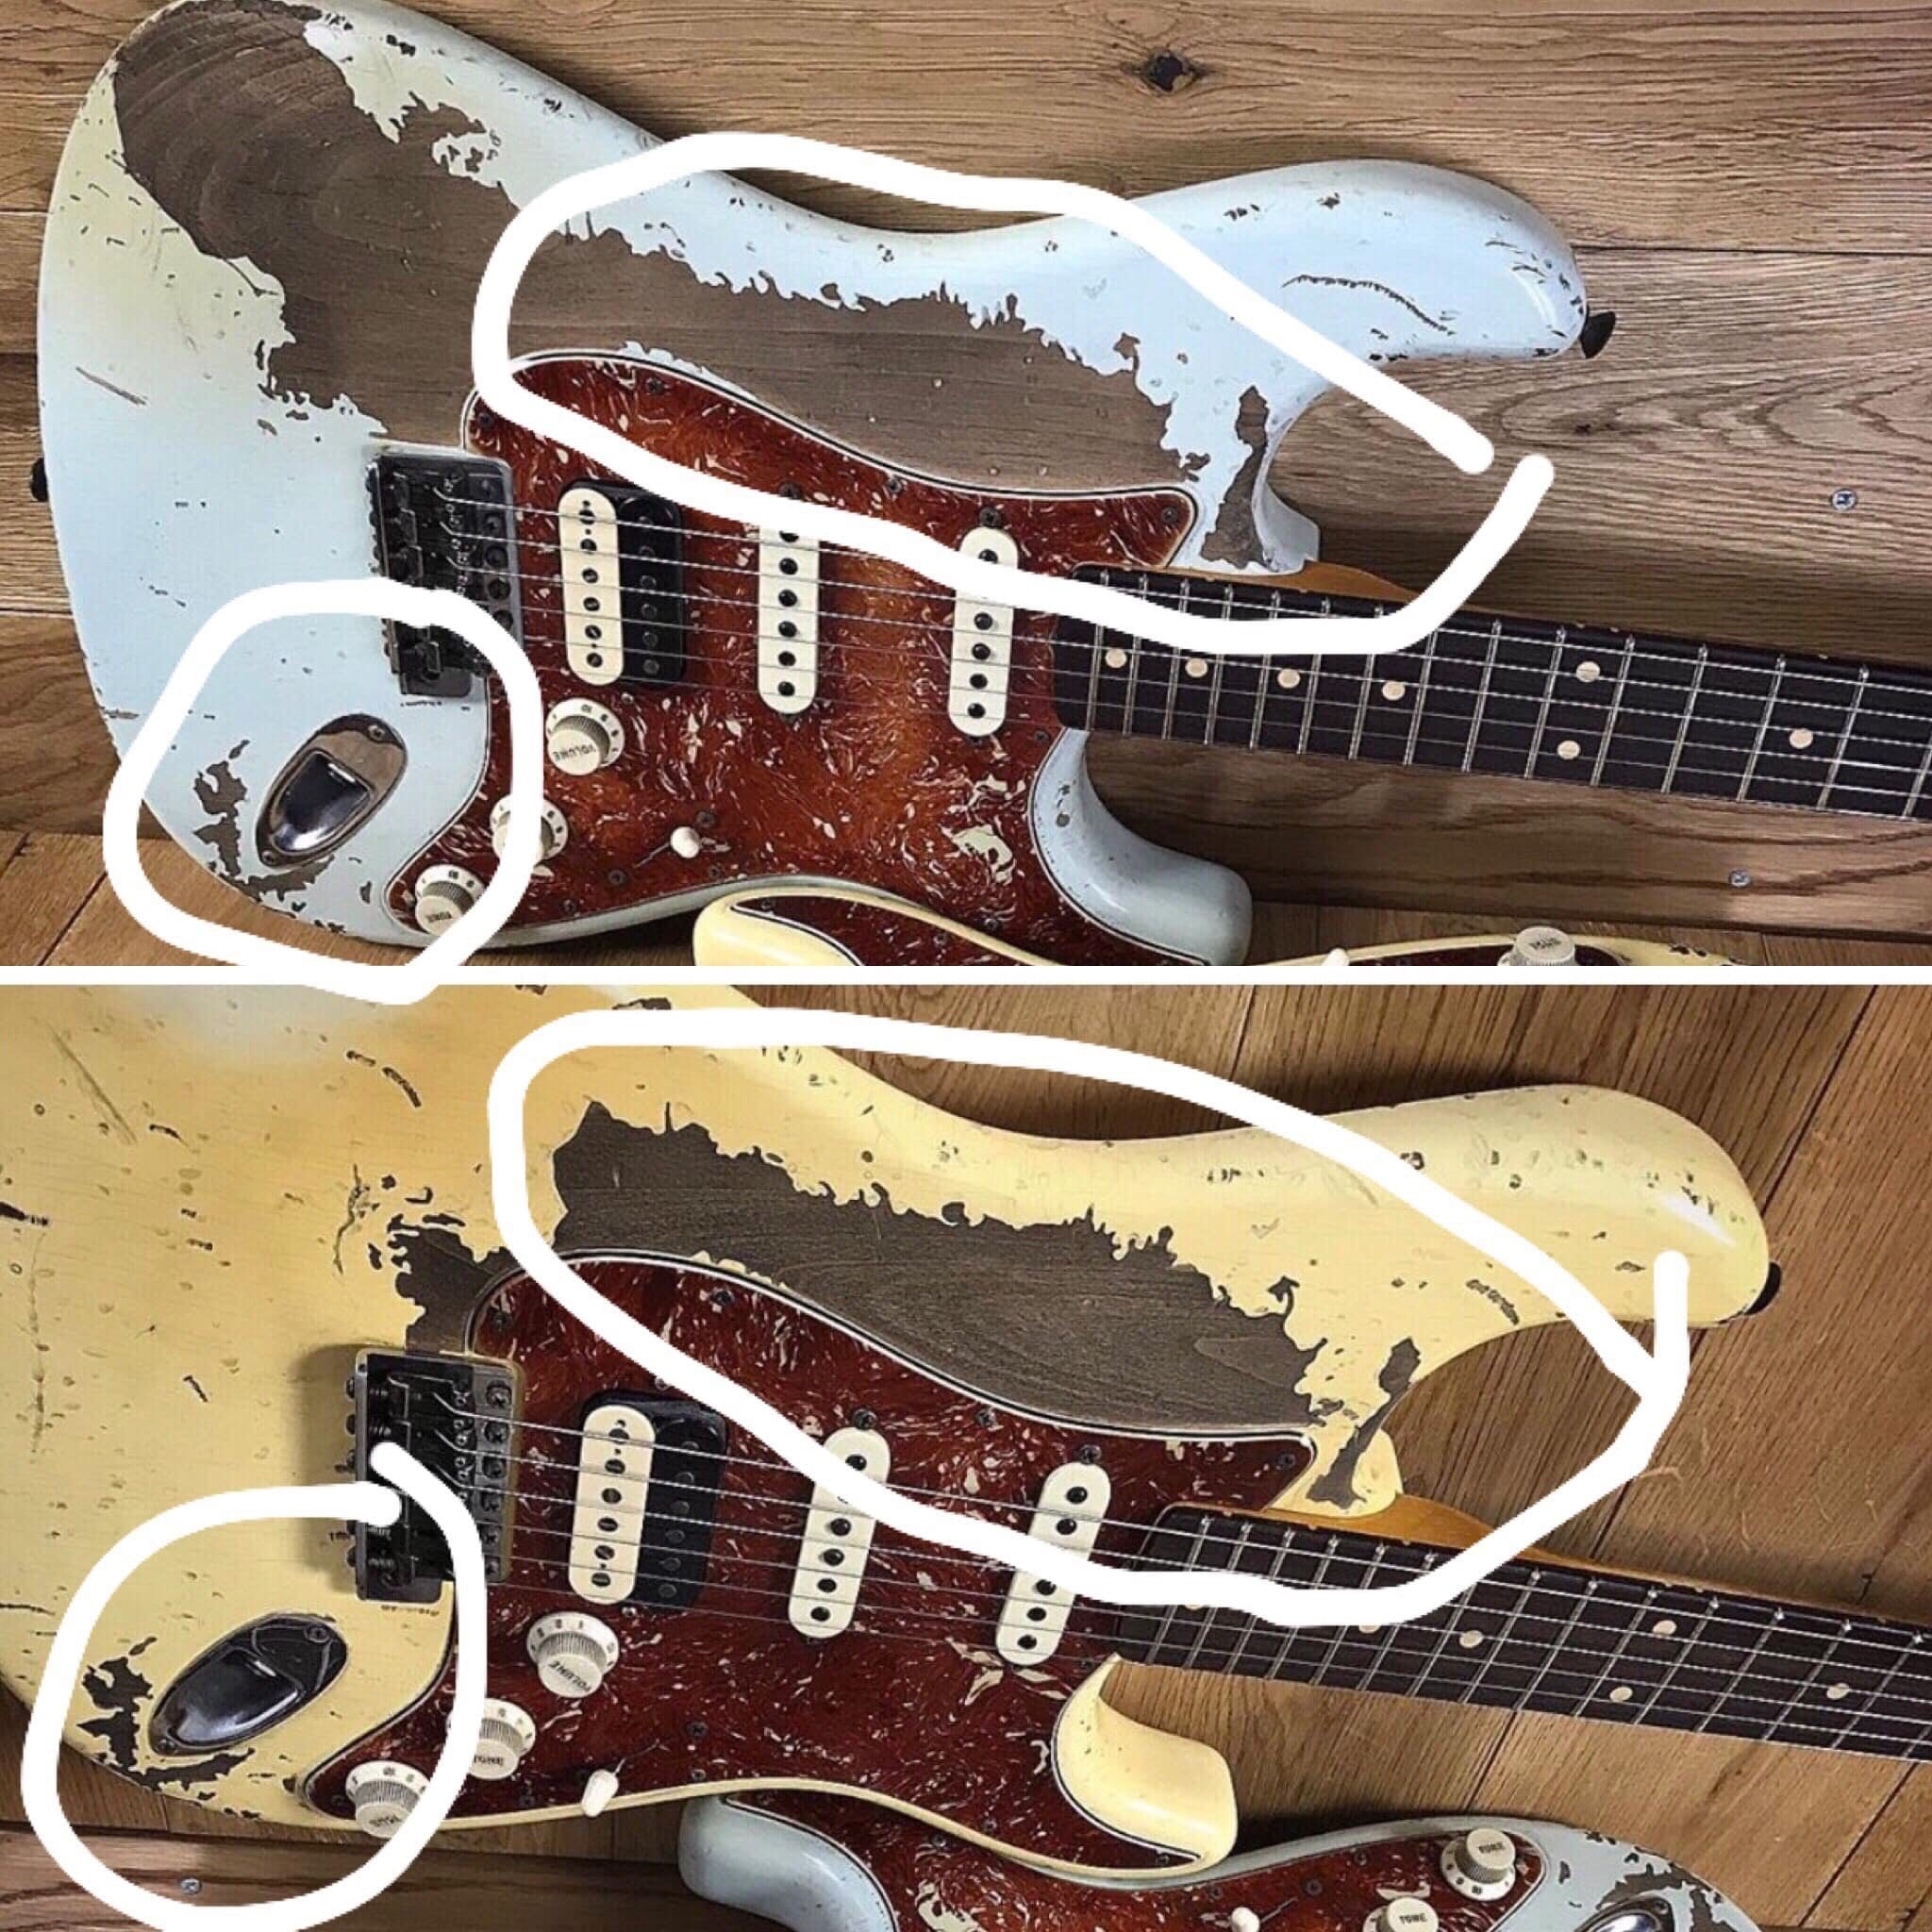 Poopot' Fender relic Stratocaster comparison